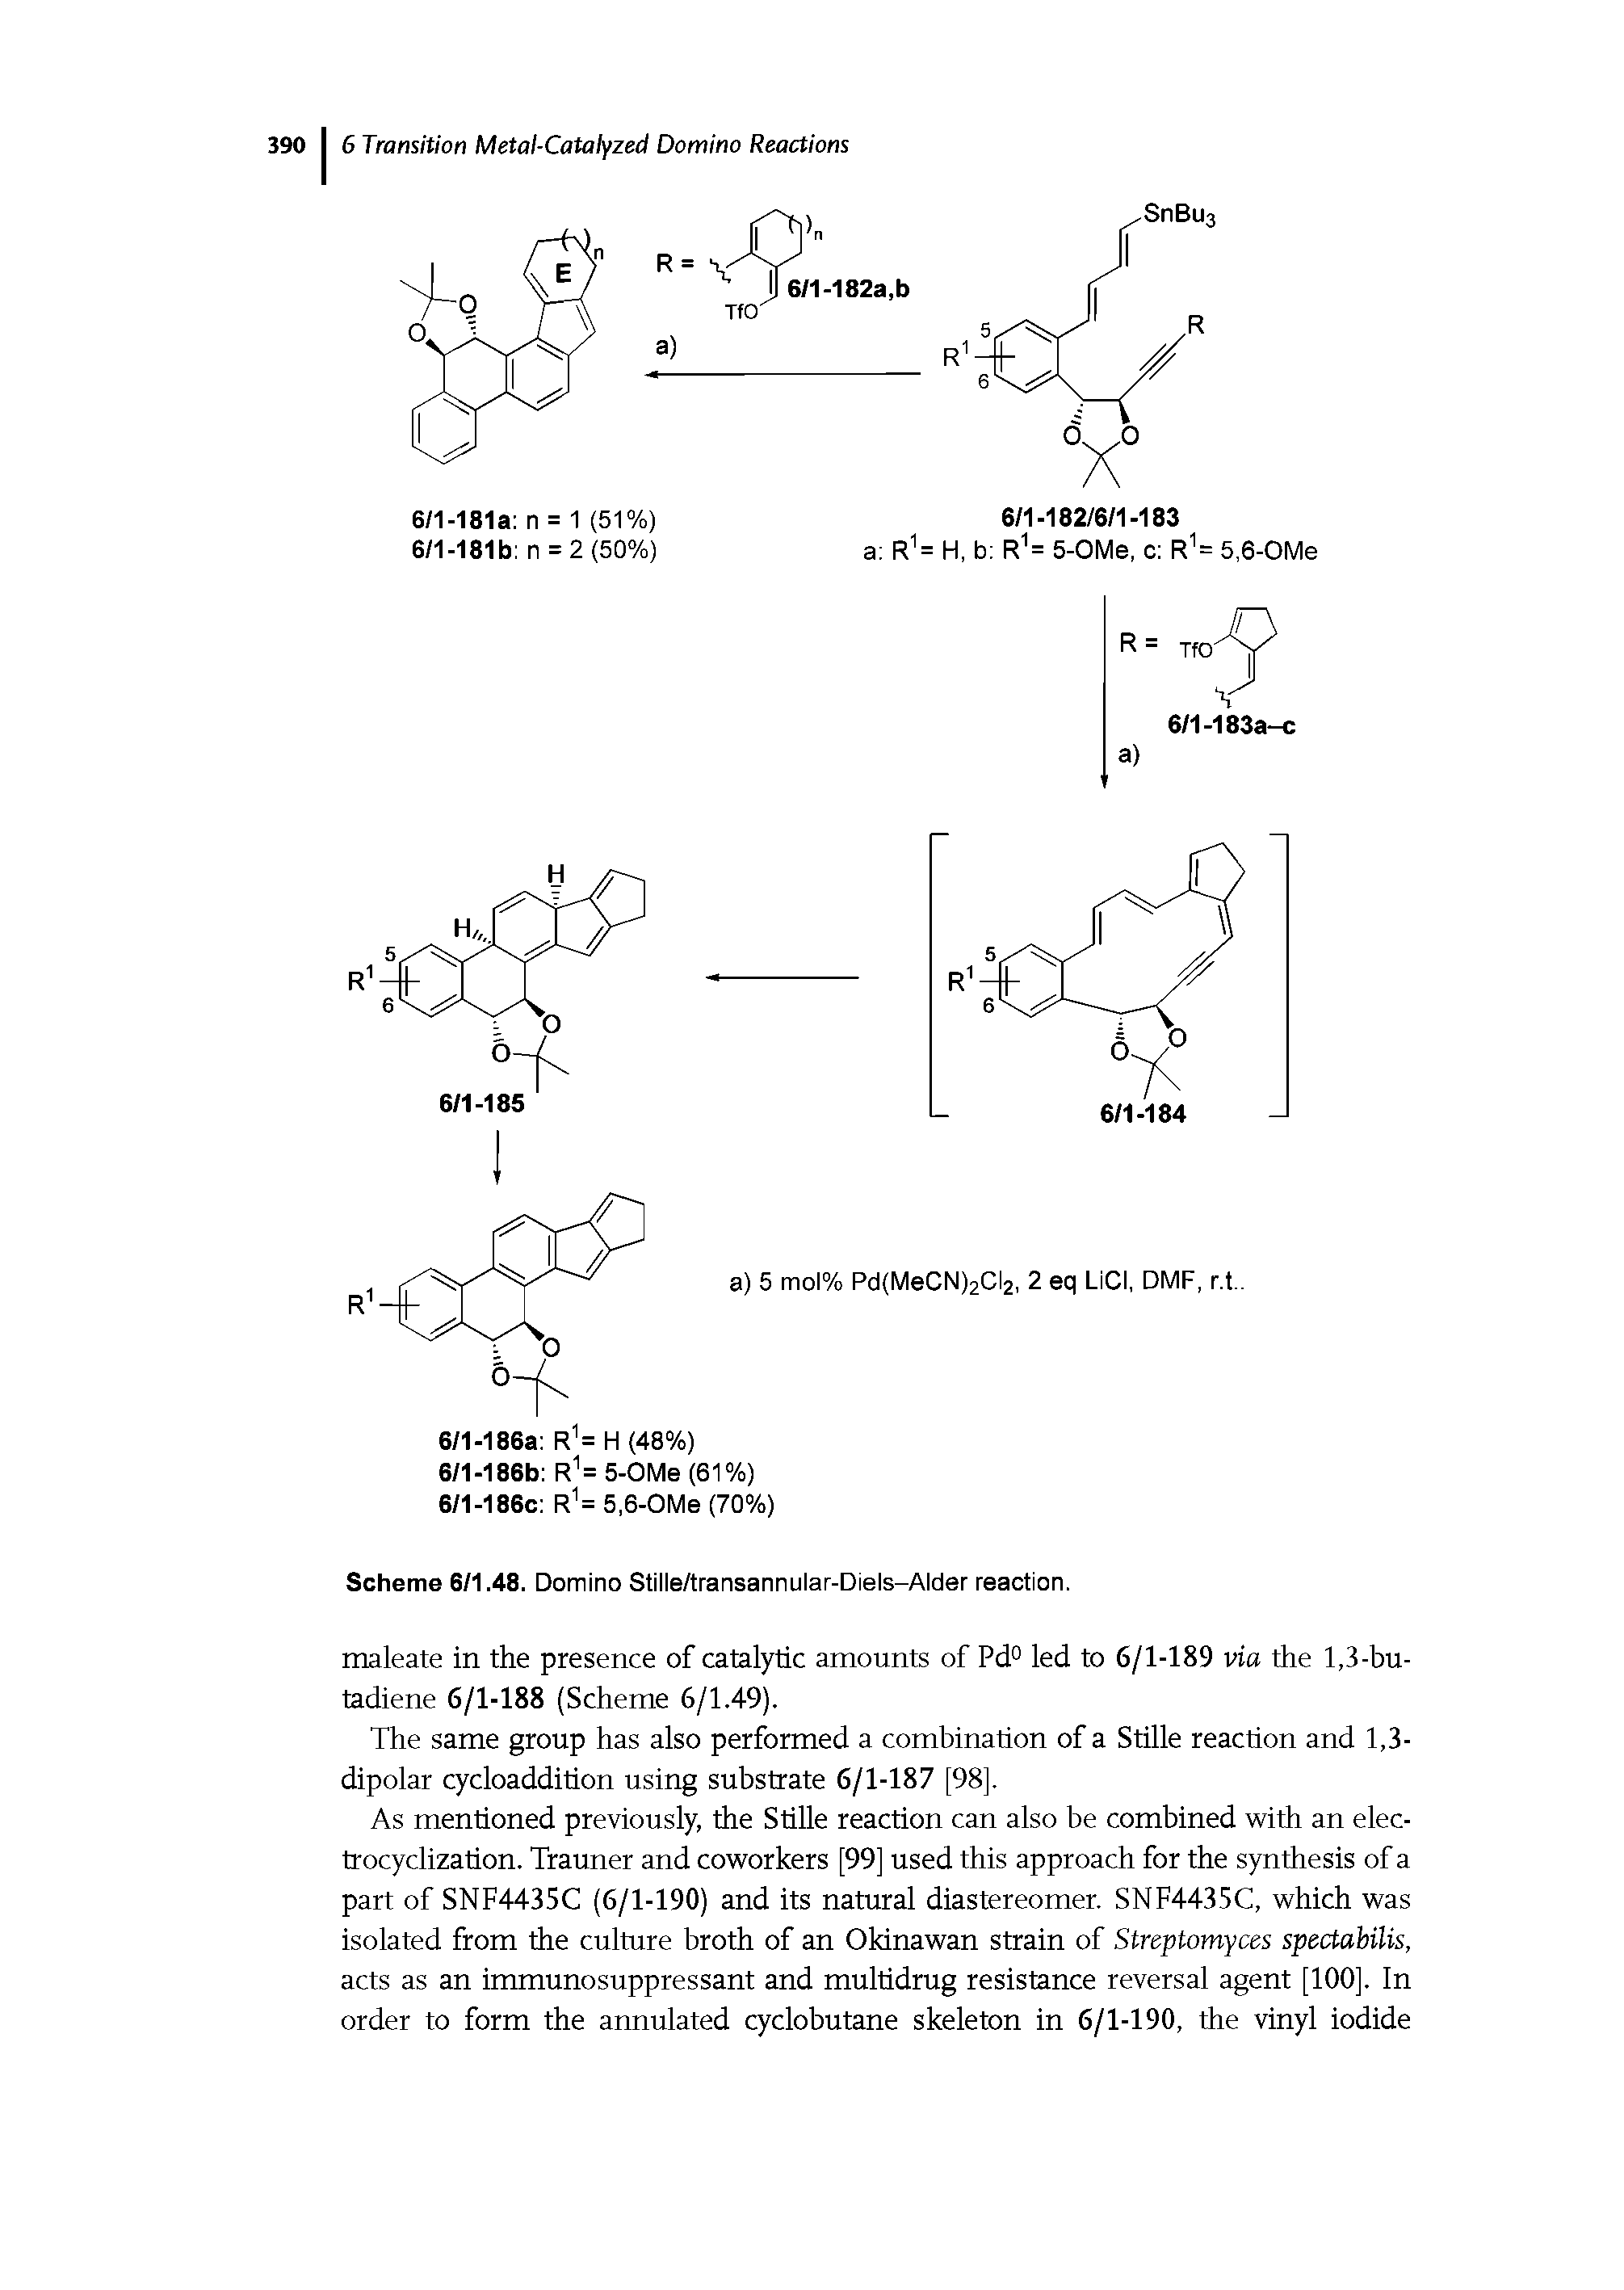 Scheme 6/1.48. Domino Stille/transannular-Diels-Alder reaction.